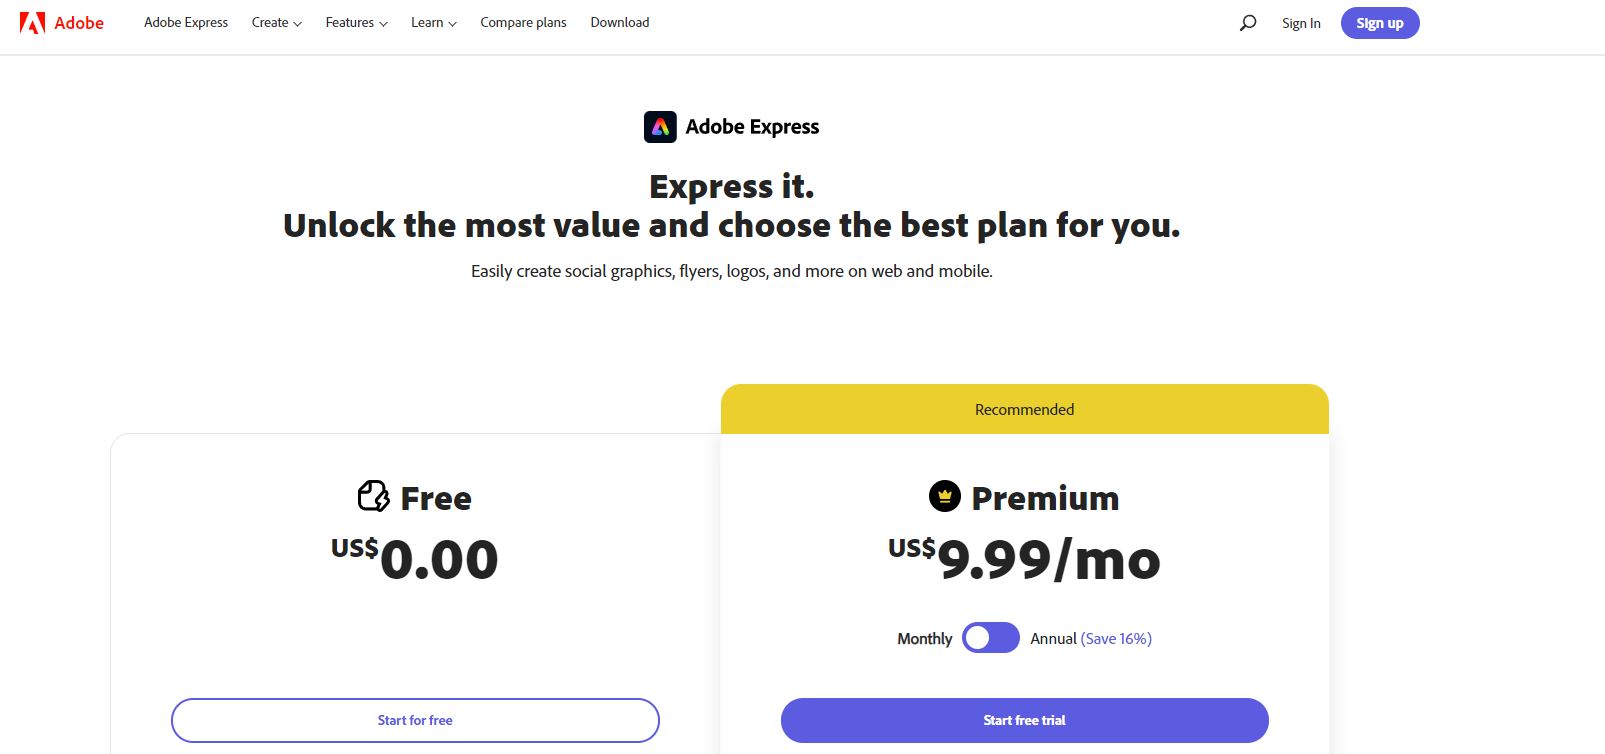 Adobe Express Pricing